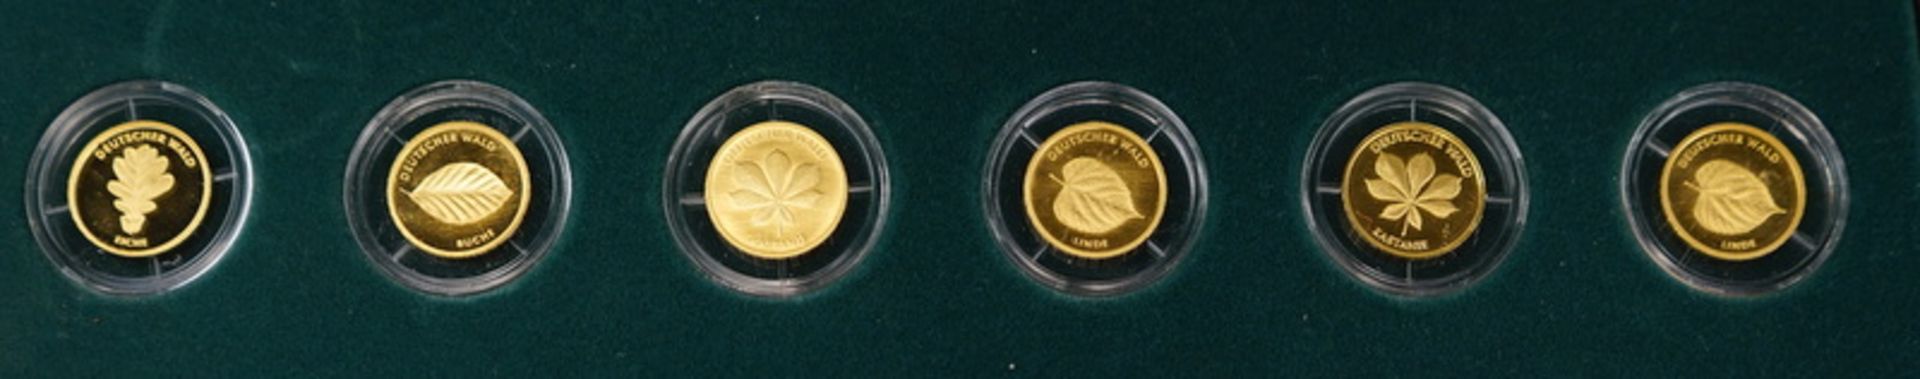 6x 20 Euro-Goldmünzen "Deutscher Wald", 999,9, insges. 23,34 g - Image 3 of 3